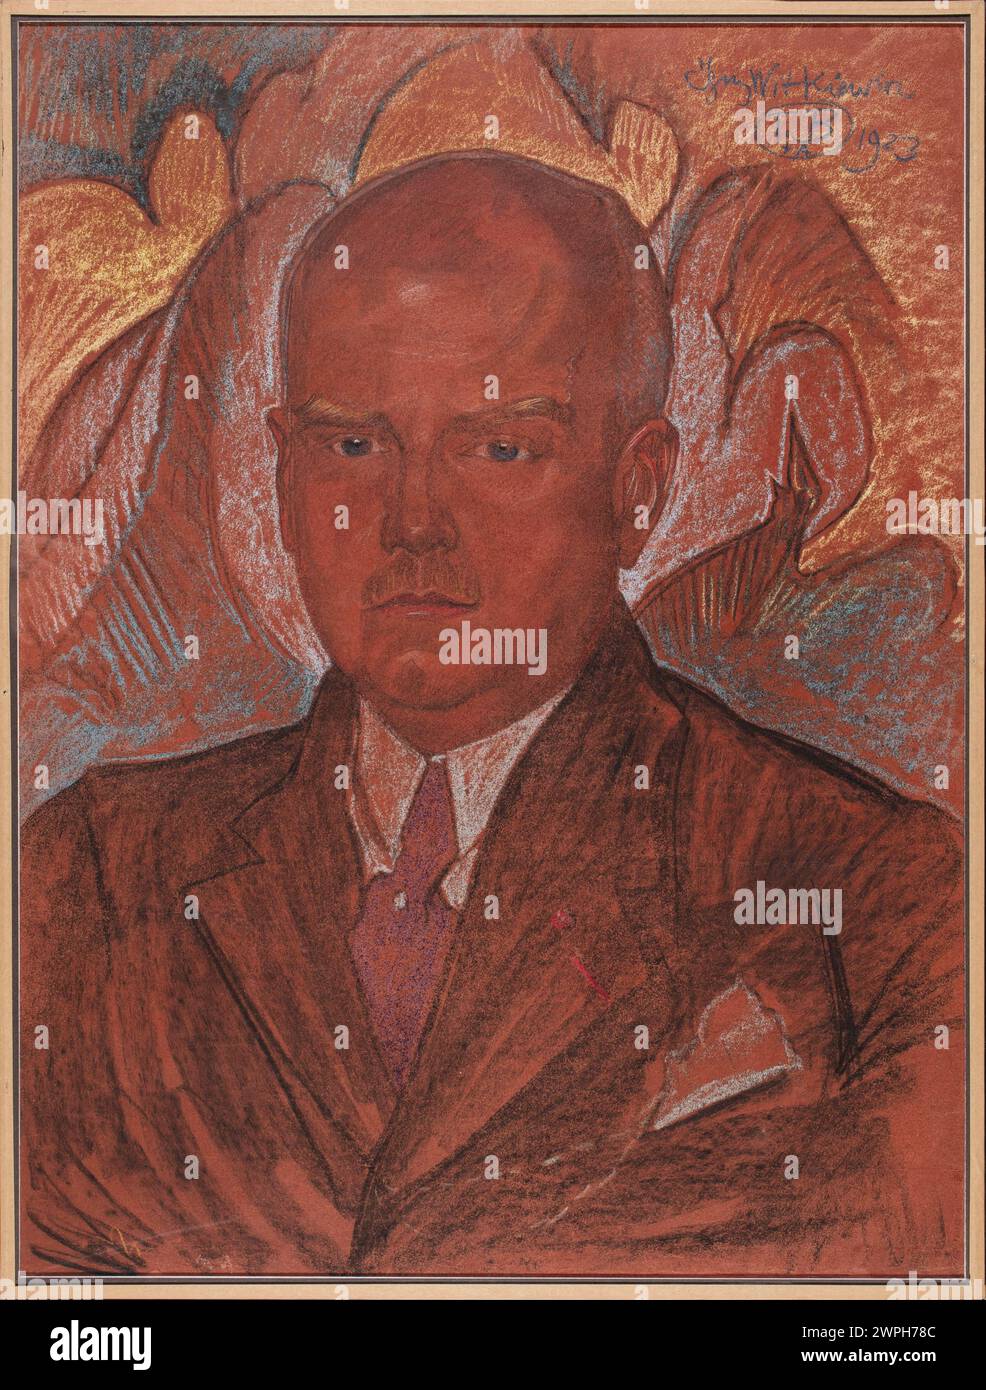 Portrait of Emil Młynarski; Witkiewicz, Stanisław Ignacy (Witkacy; 1885-1939); 1923 (1923-00-00-1923-00-00); Stock Photo